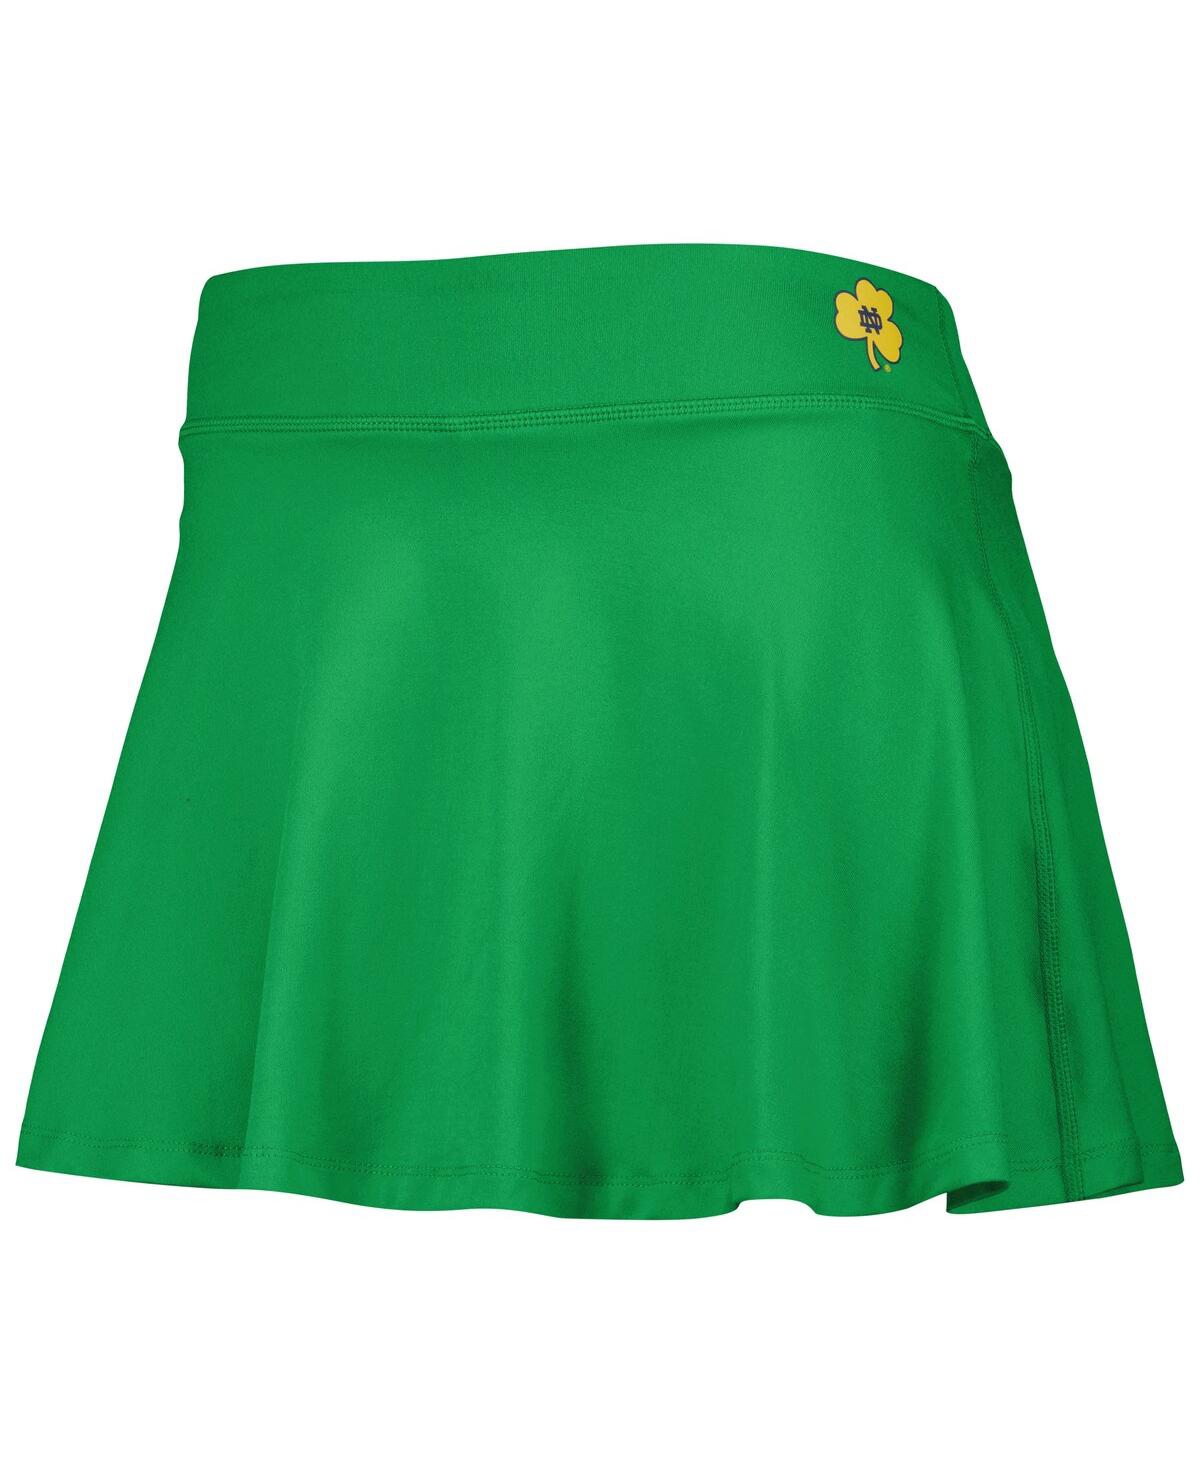 Shop Zoozatz Women's  Green Notre Dame Fighting Irish Flowy Skort